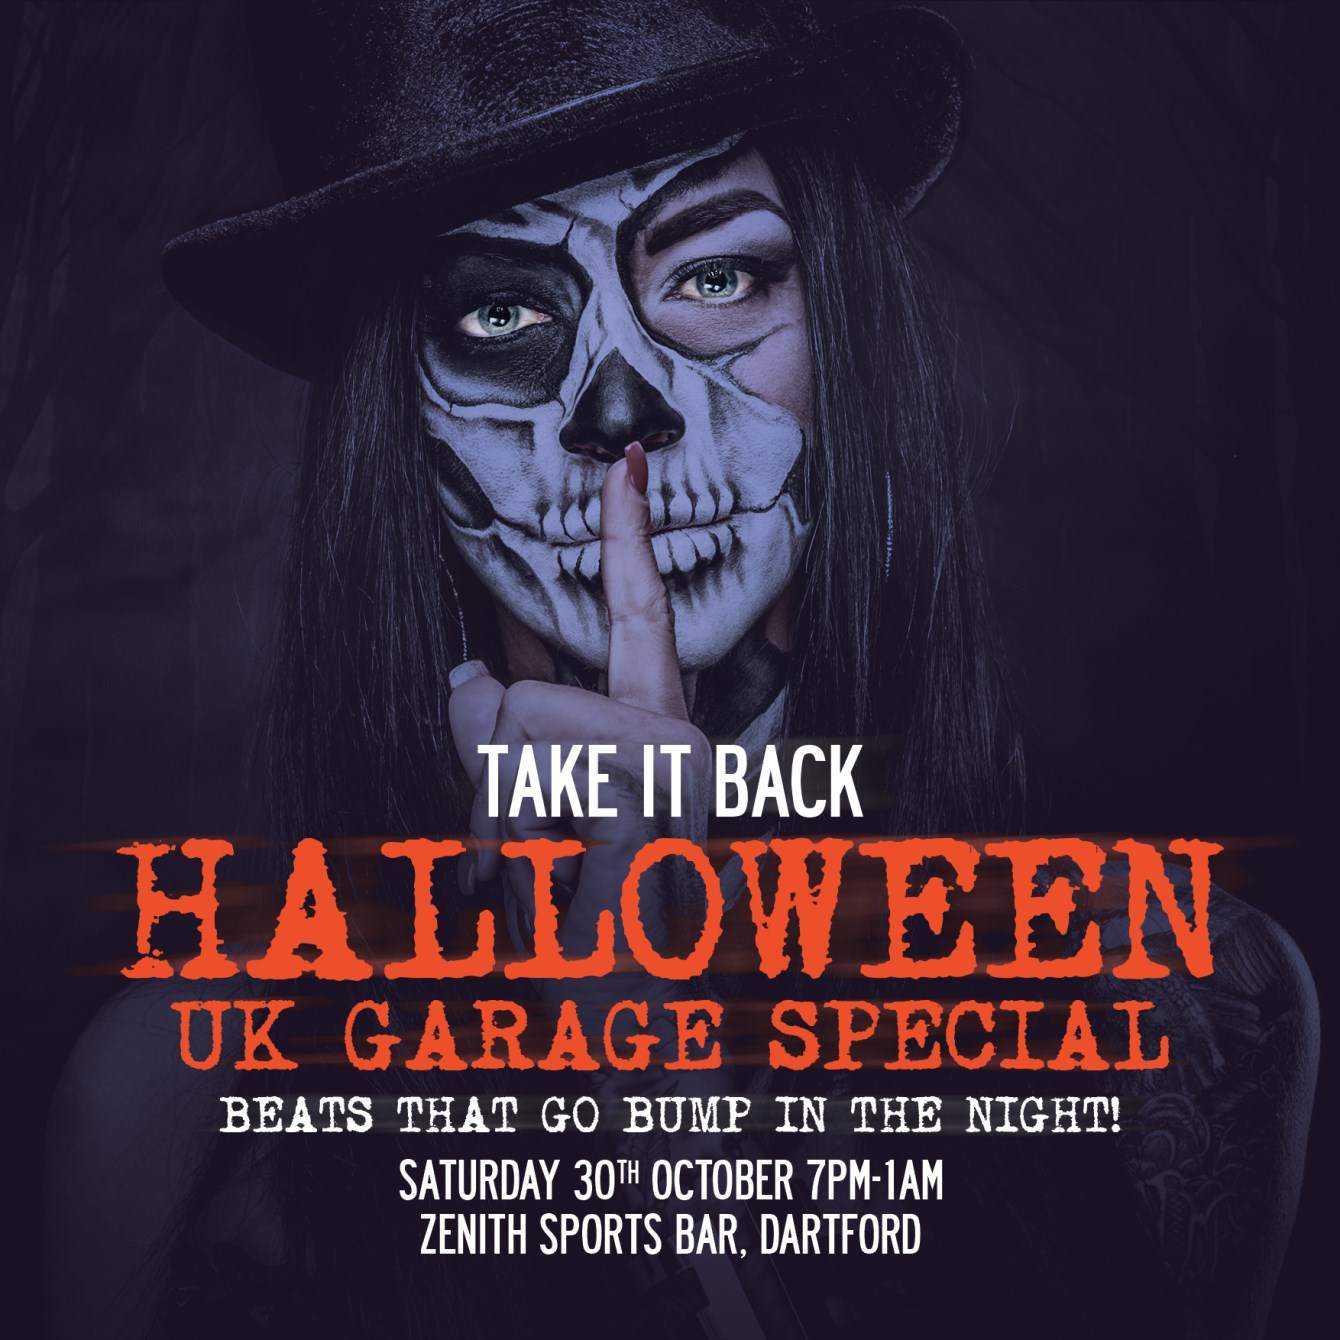 Take It Back Halloween UK Garage Special - Página frontal